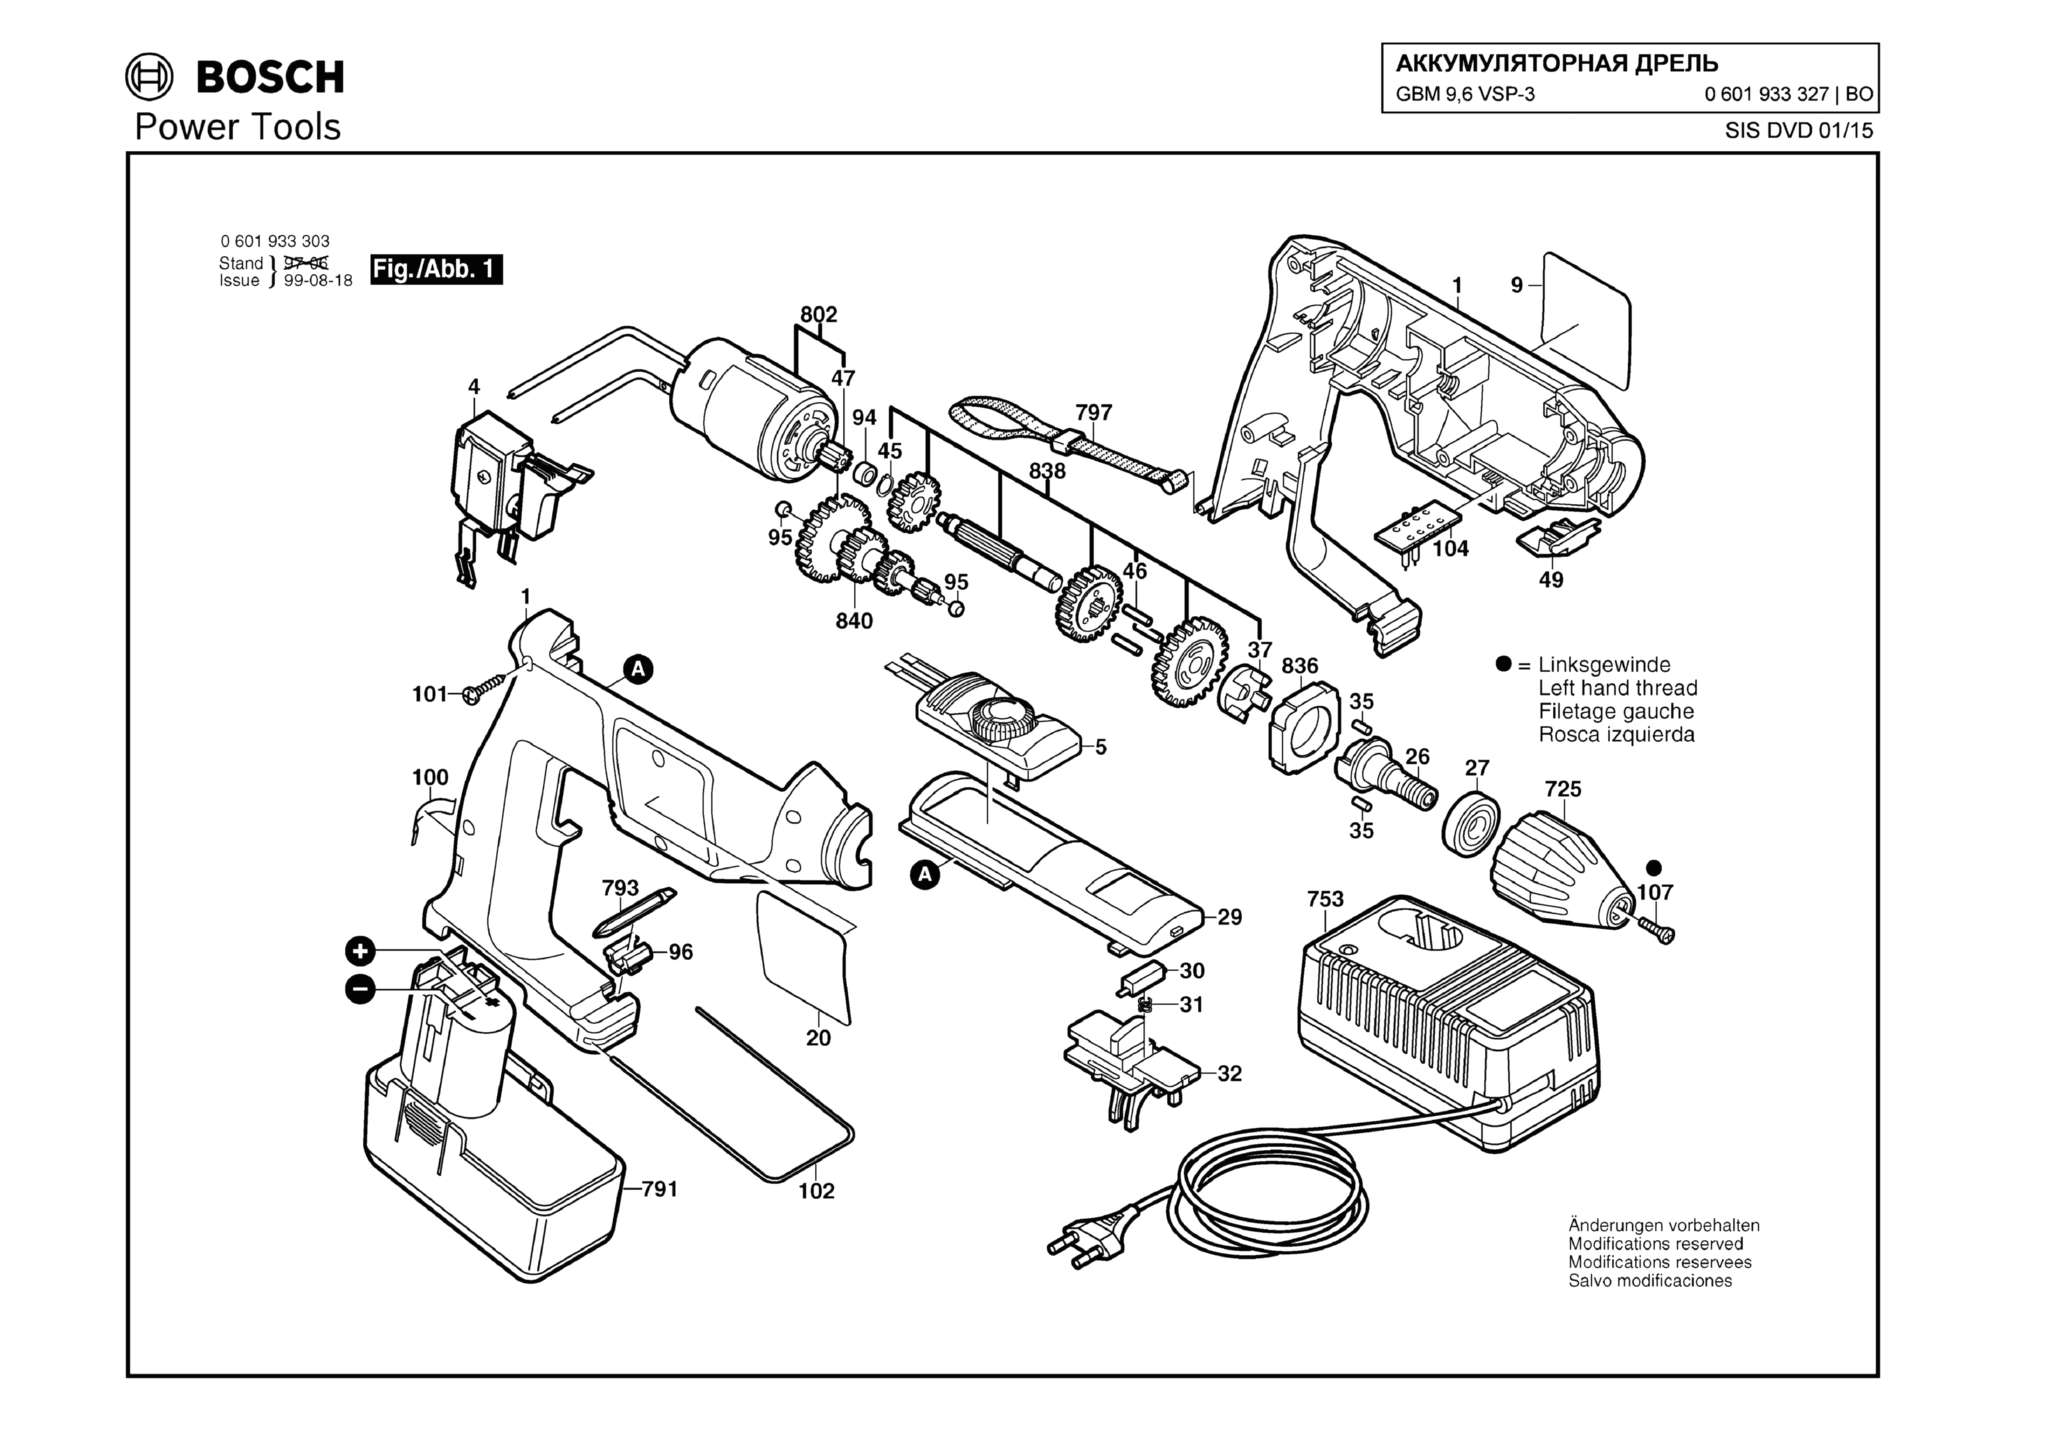 Запчасти, схема и деталировка Bosch GBM 9,6 VSP-3 (ТИП 0601933327)